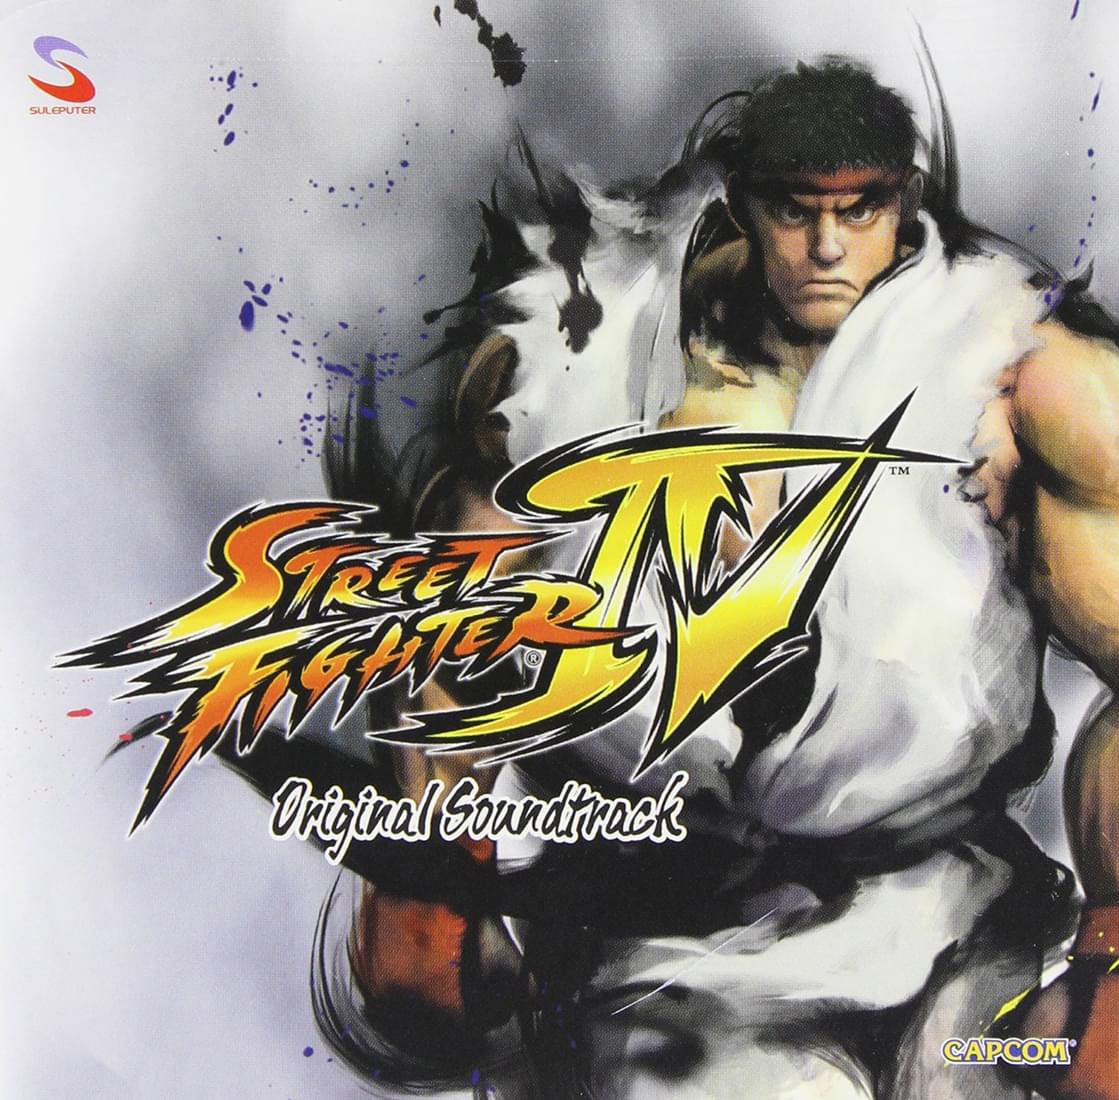 Street Fighter IV Original Soundtrack CD